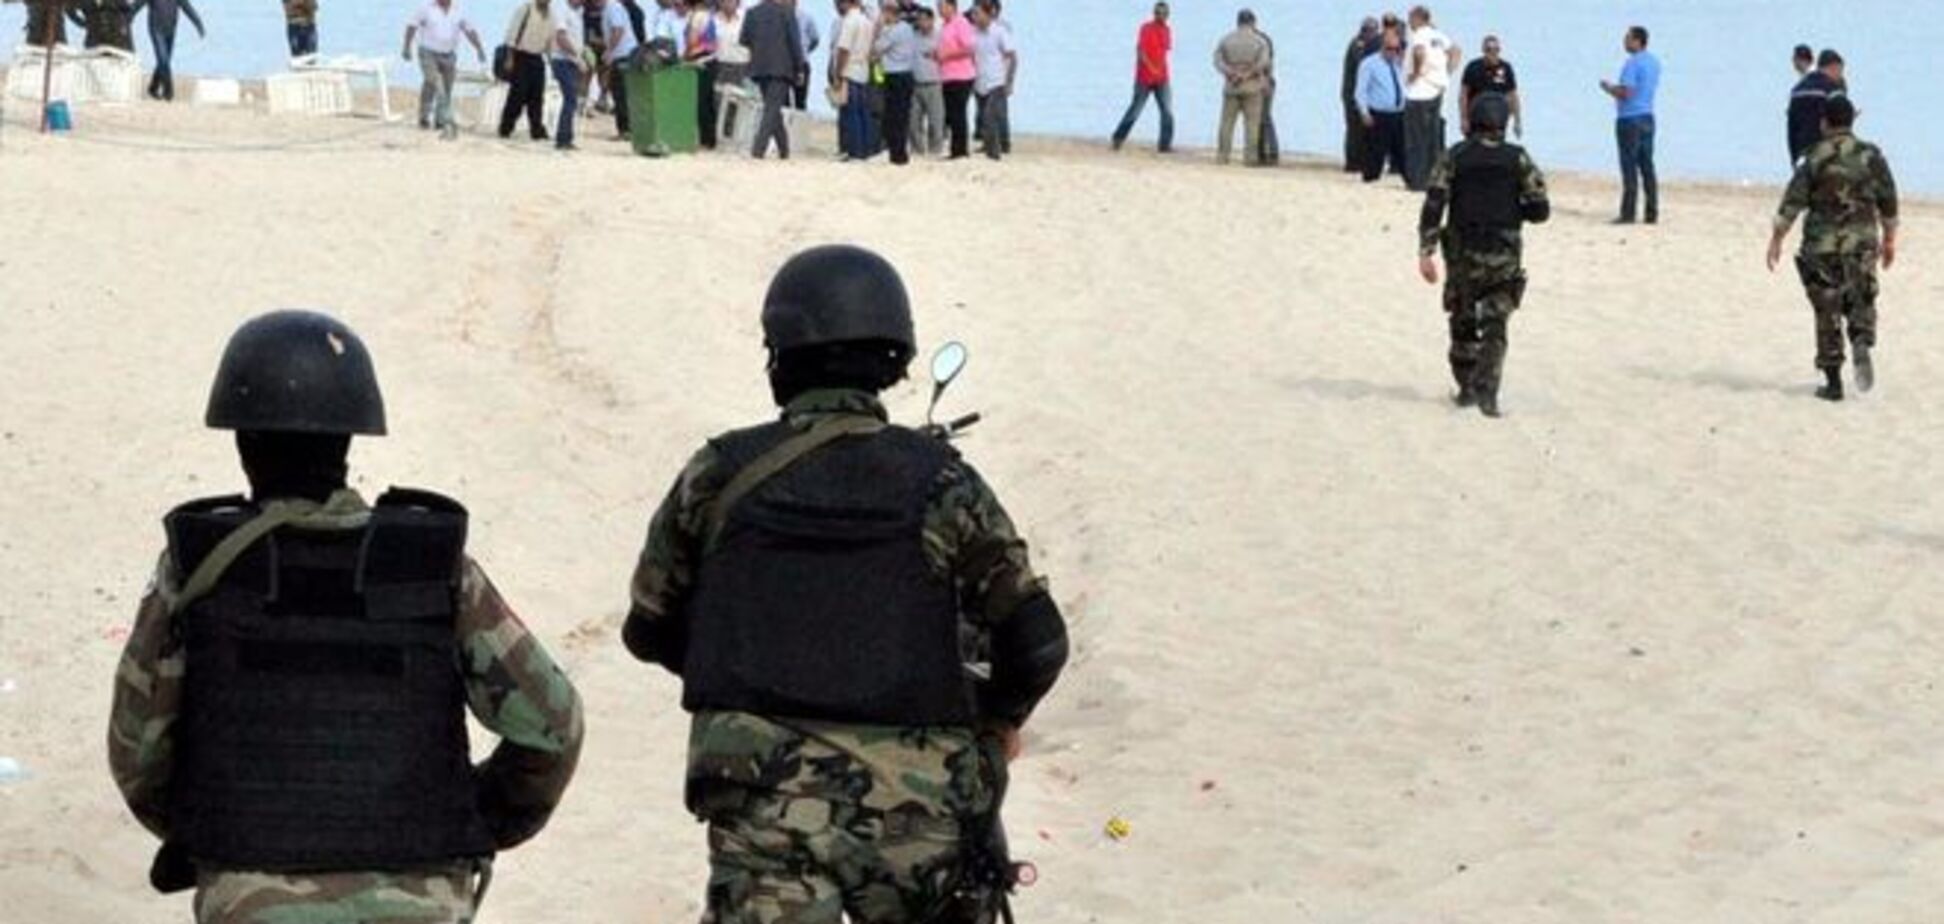 Подробности теракта в Тунисе: число жертв растет, туристы массово уезжают